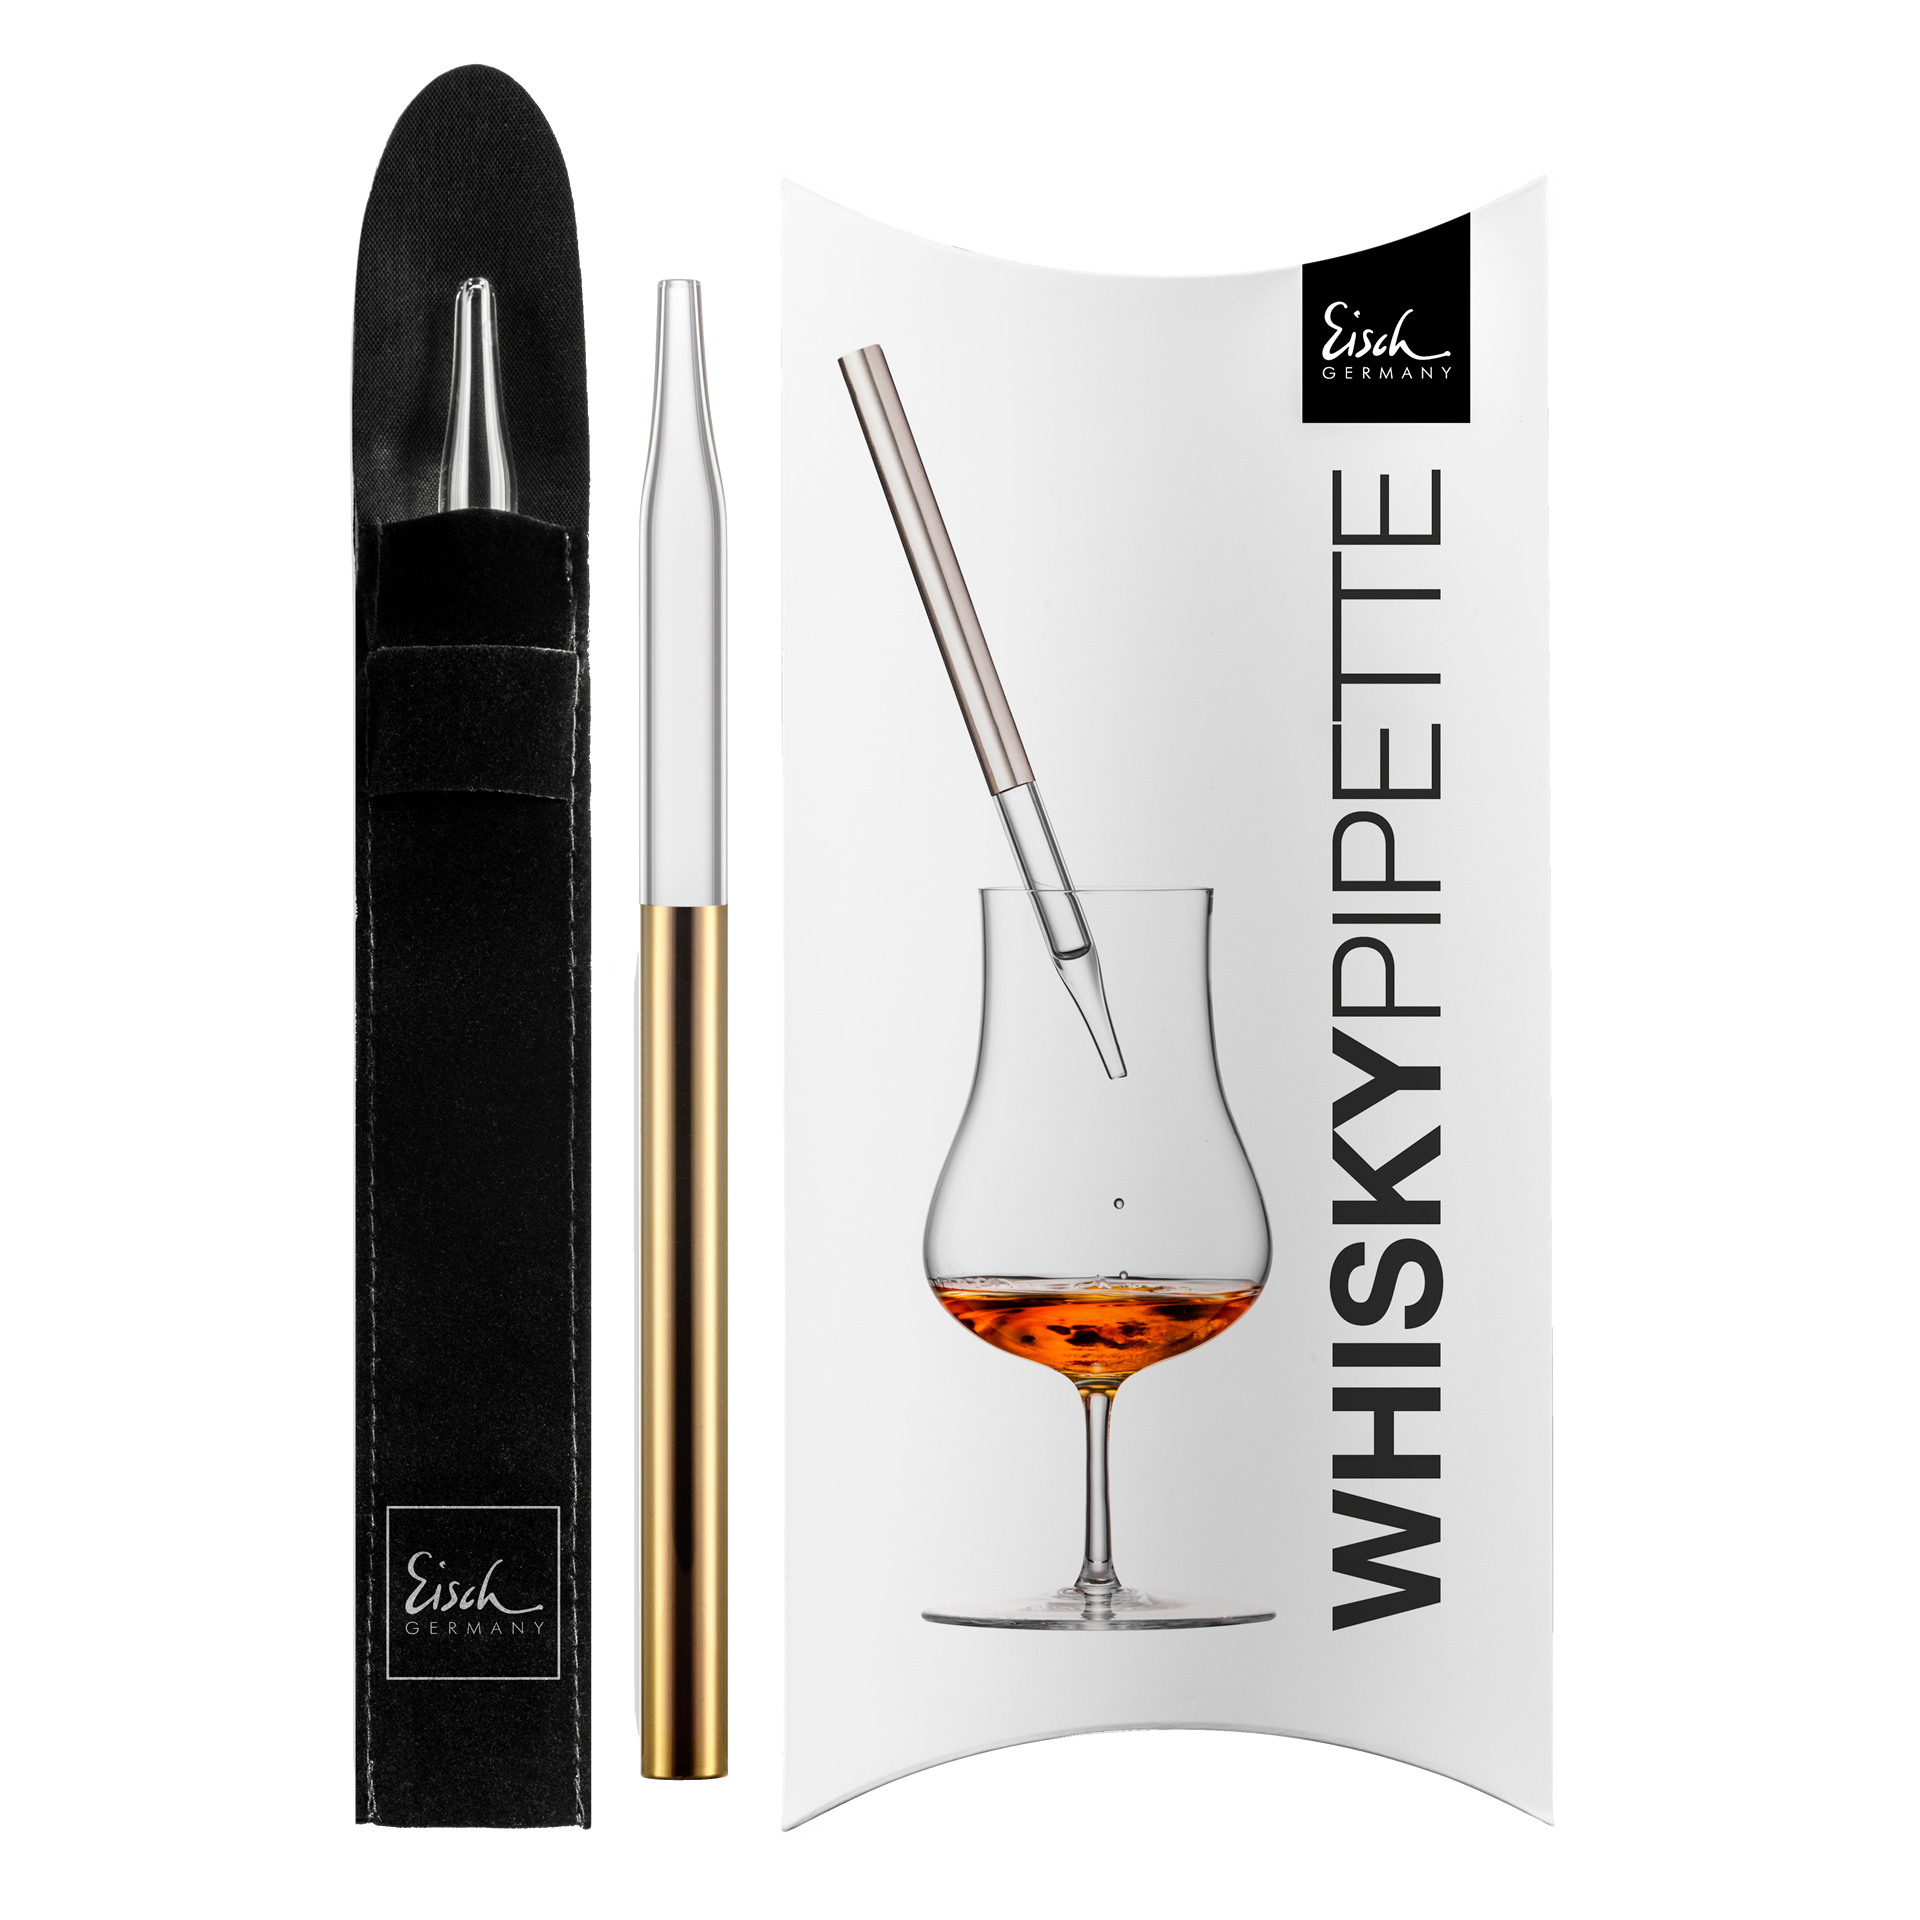 EISCH Germany Jeunesse Malt Whiskey Gift Set, 2 Glasses, 1 set